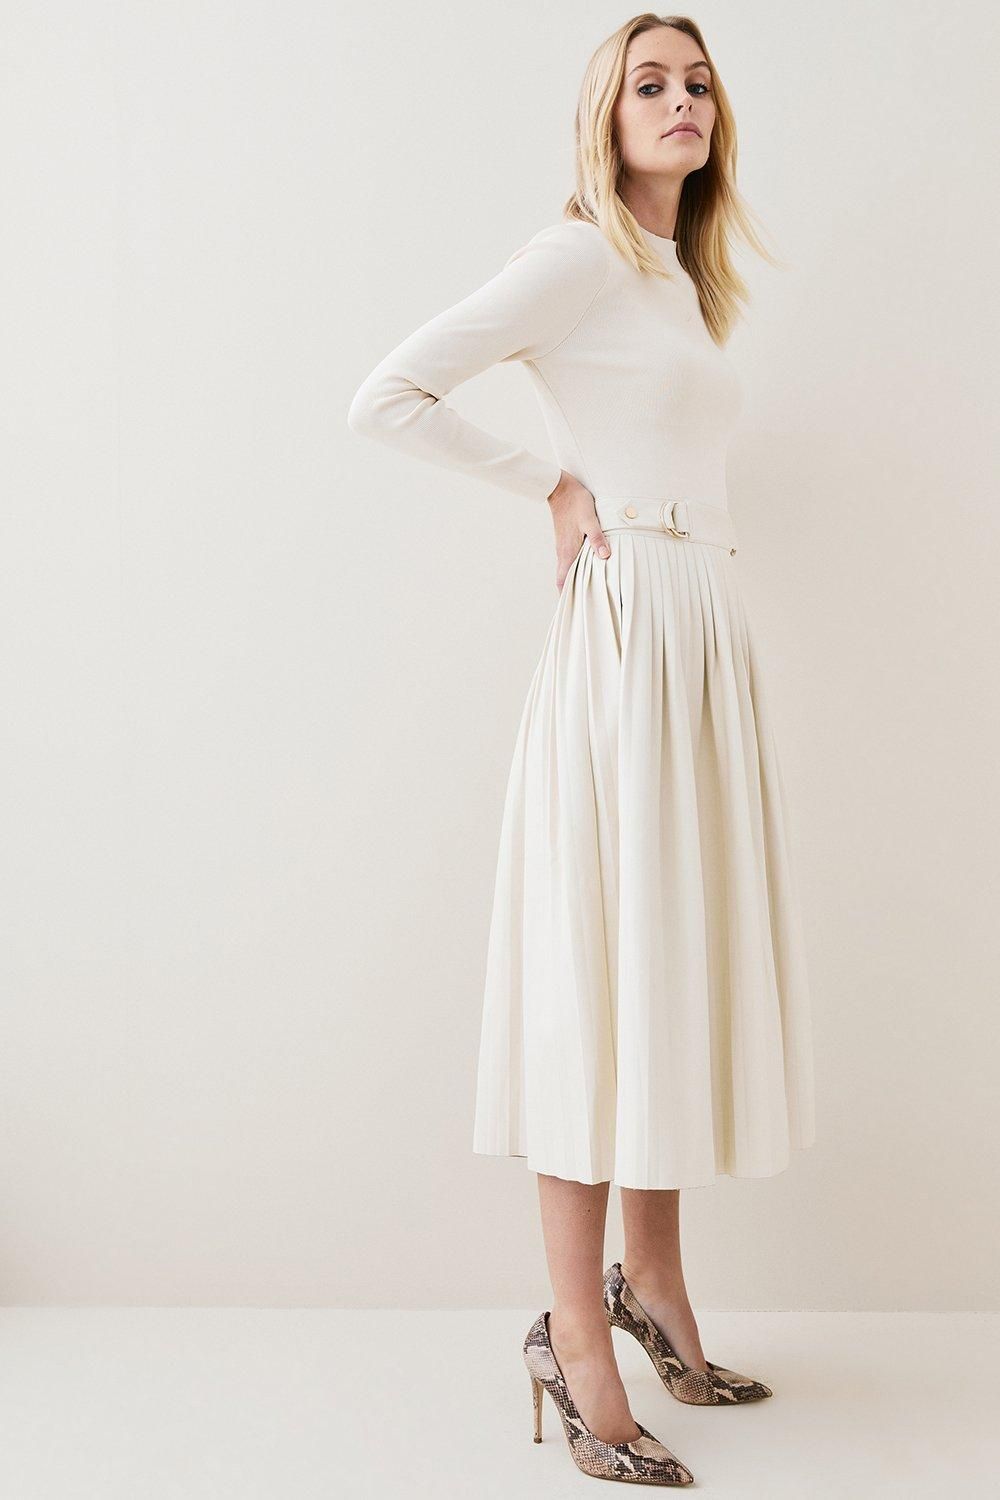 Viscose Blend Knitted Pleated Midi Dress With Pu Detailing | Karen Millen UK + IE + DE + NL